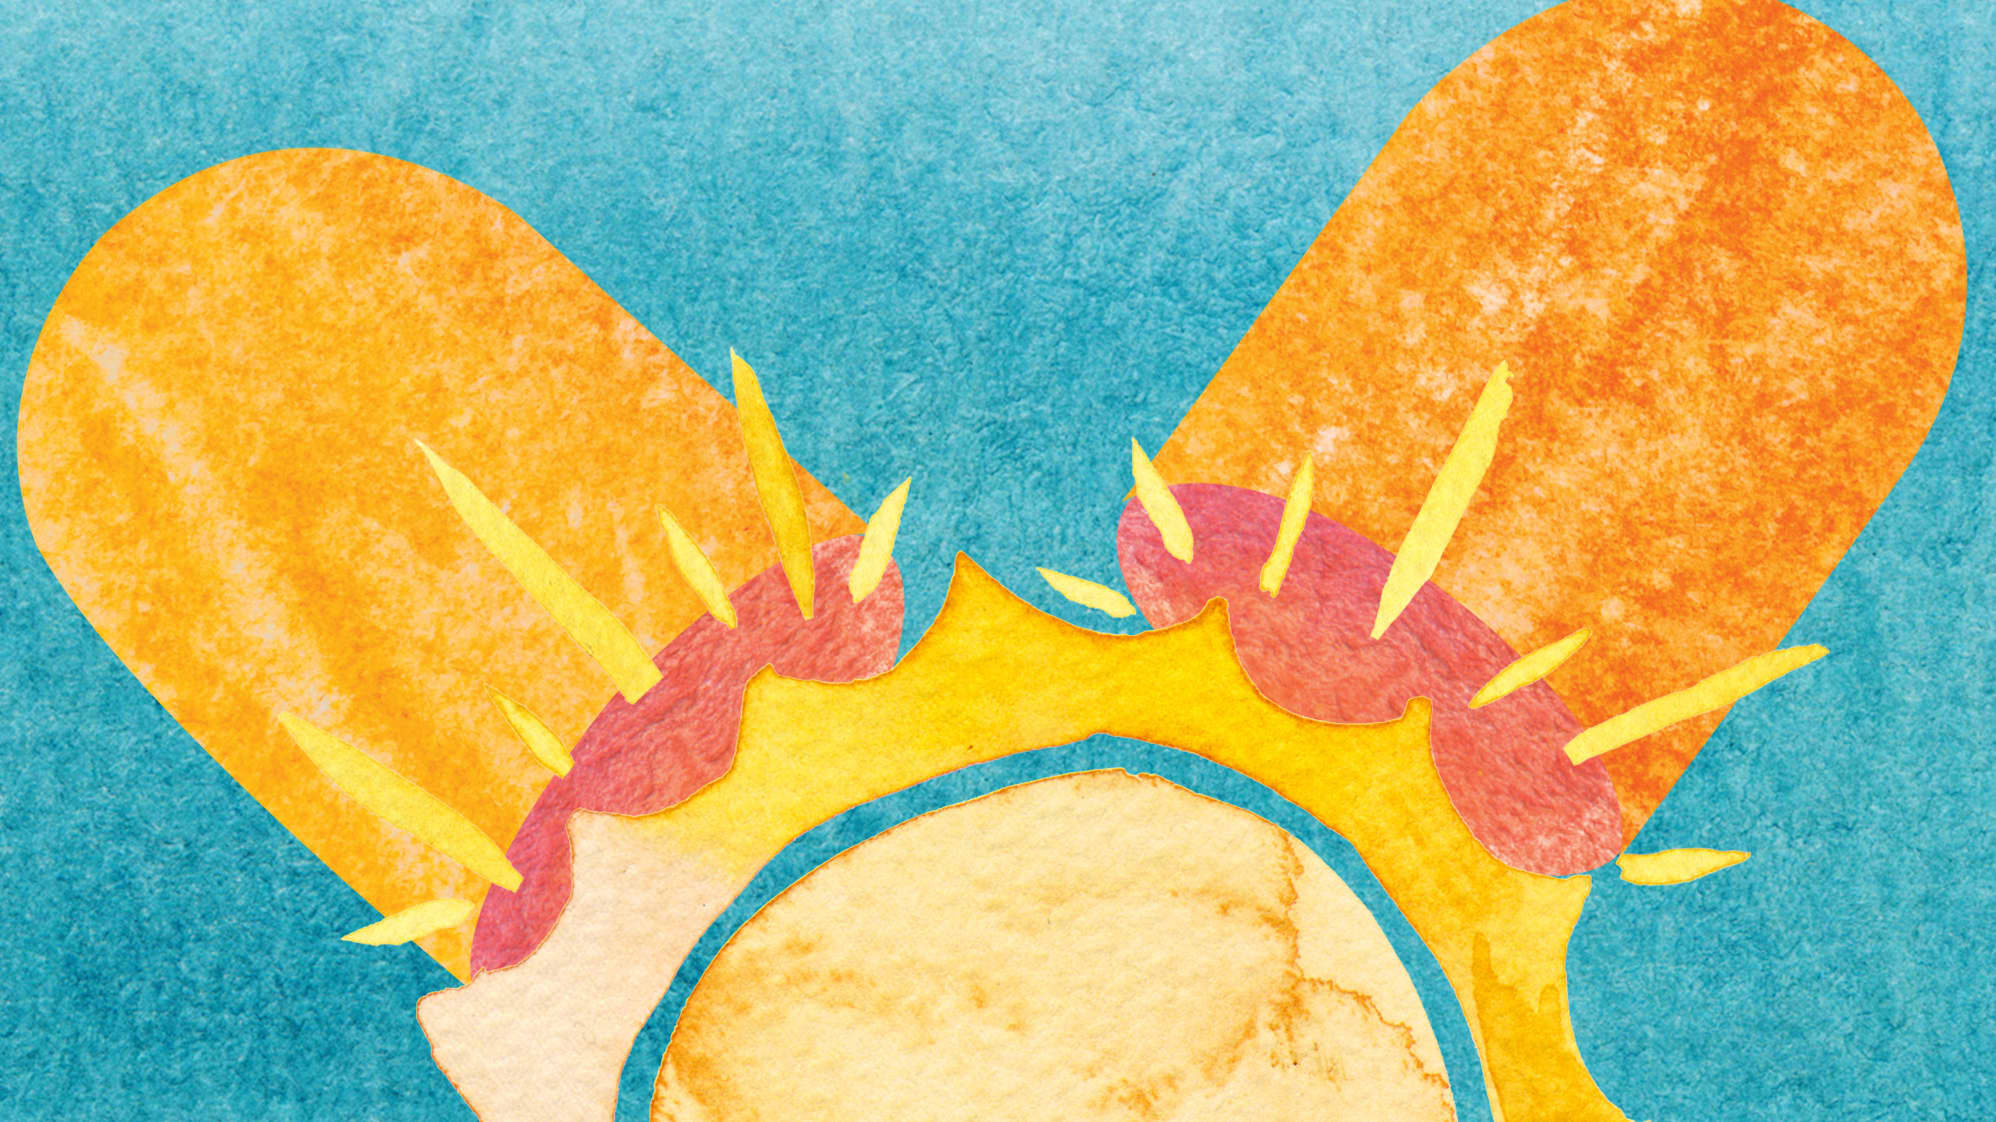 Artwork depicting sun in a capsule, representing vitamin D